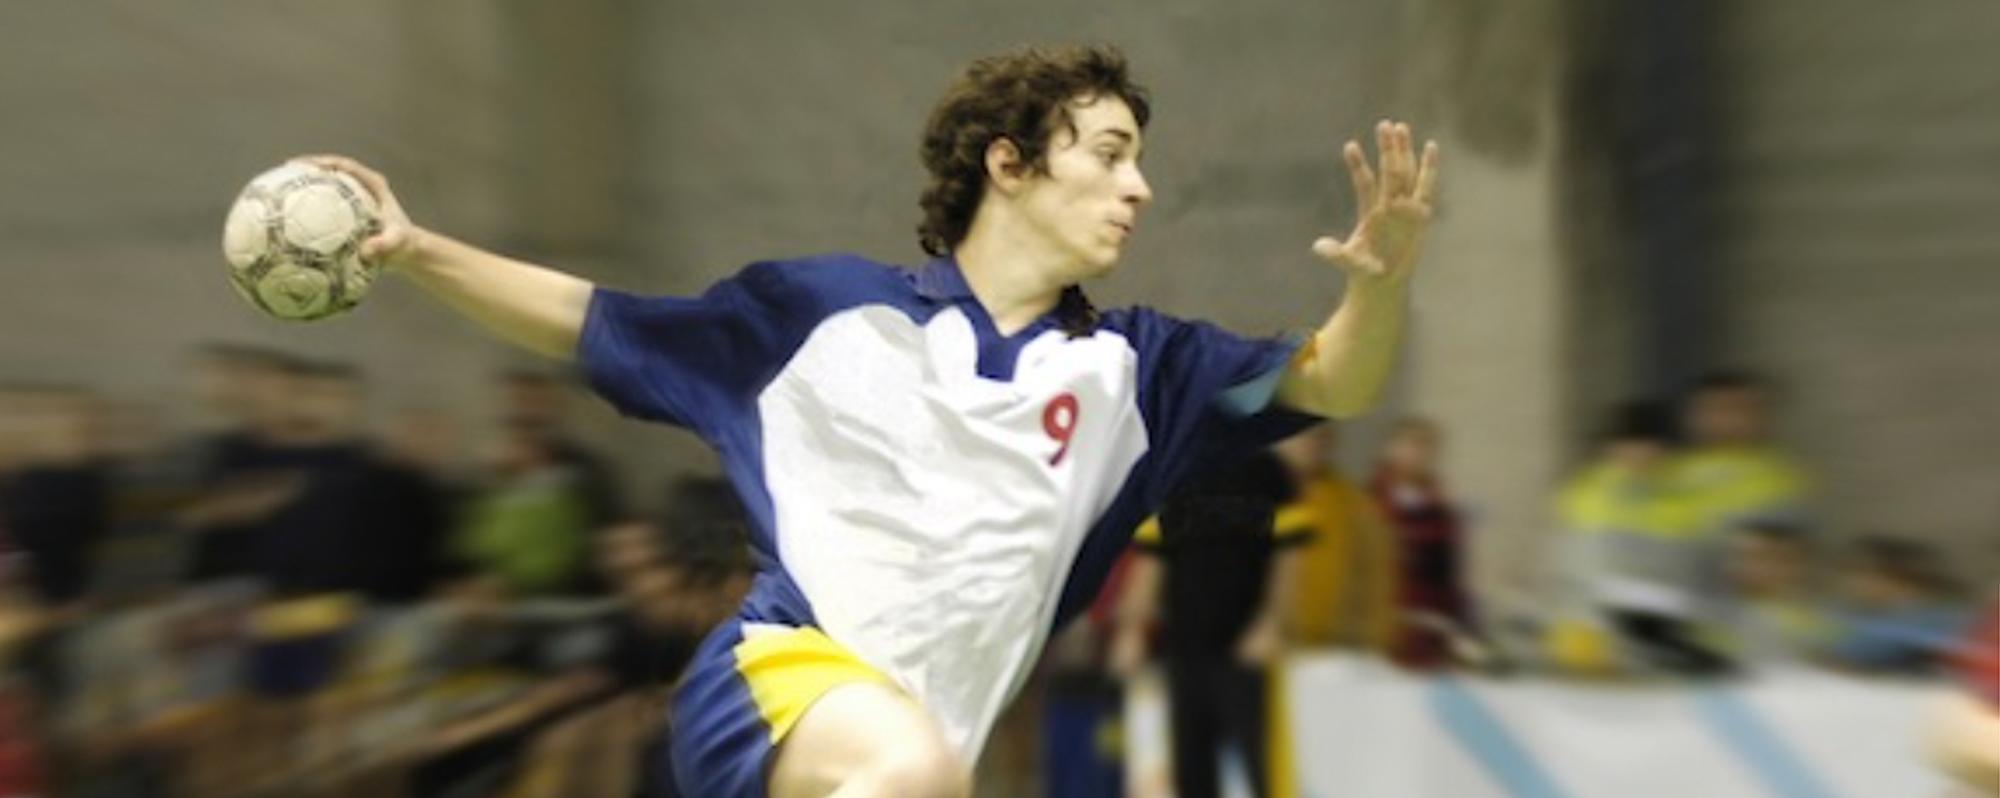 SUC Handball